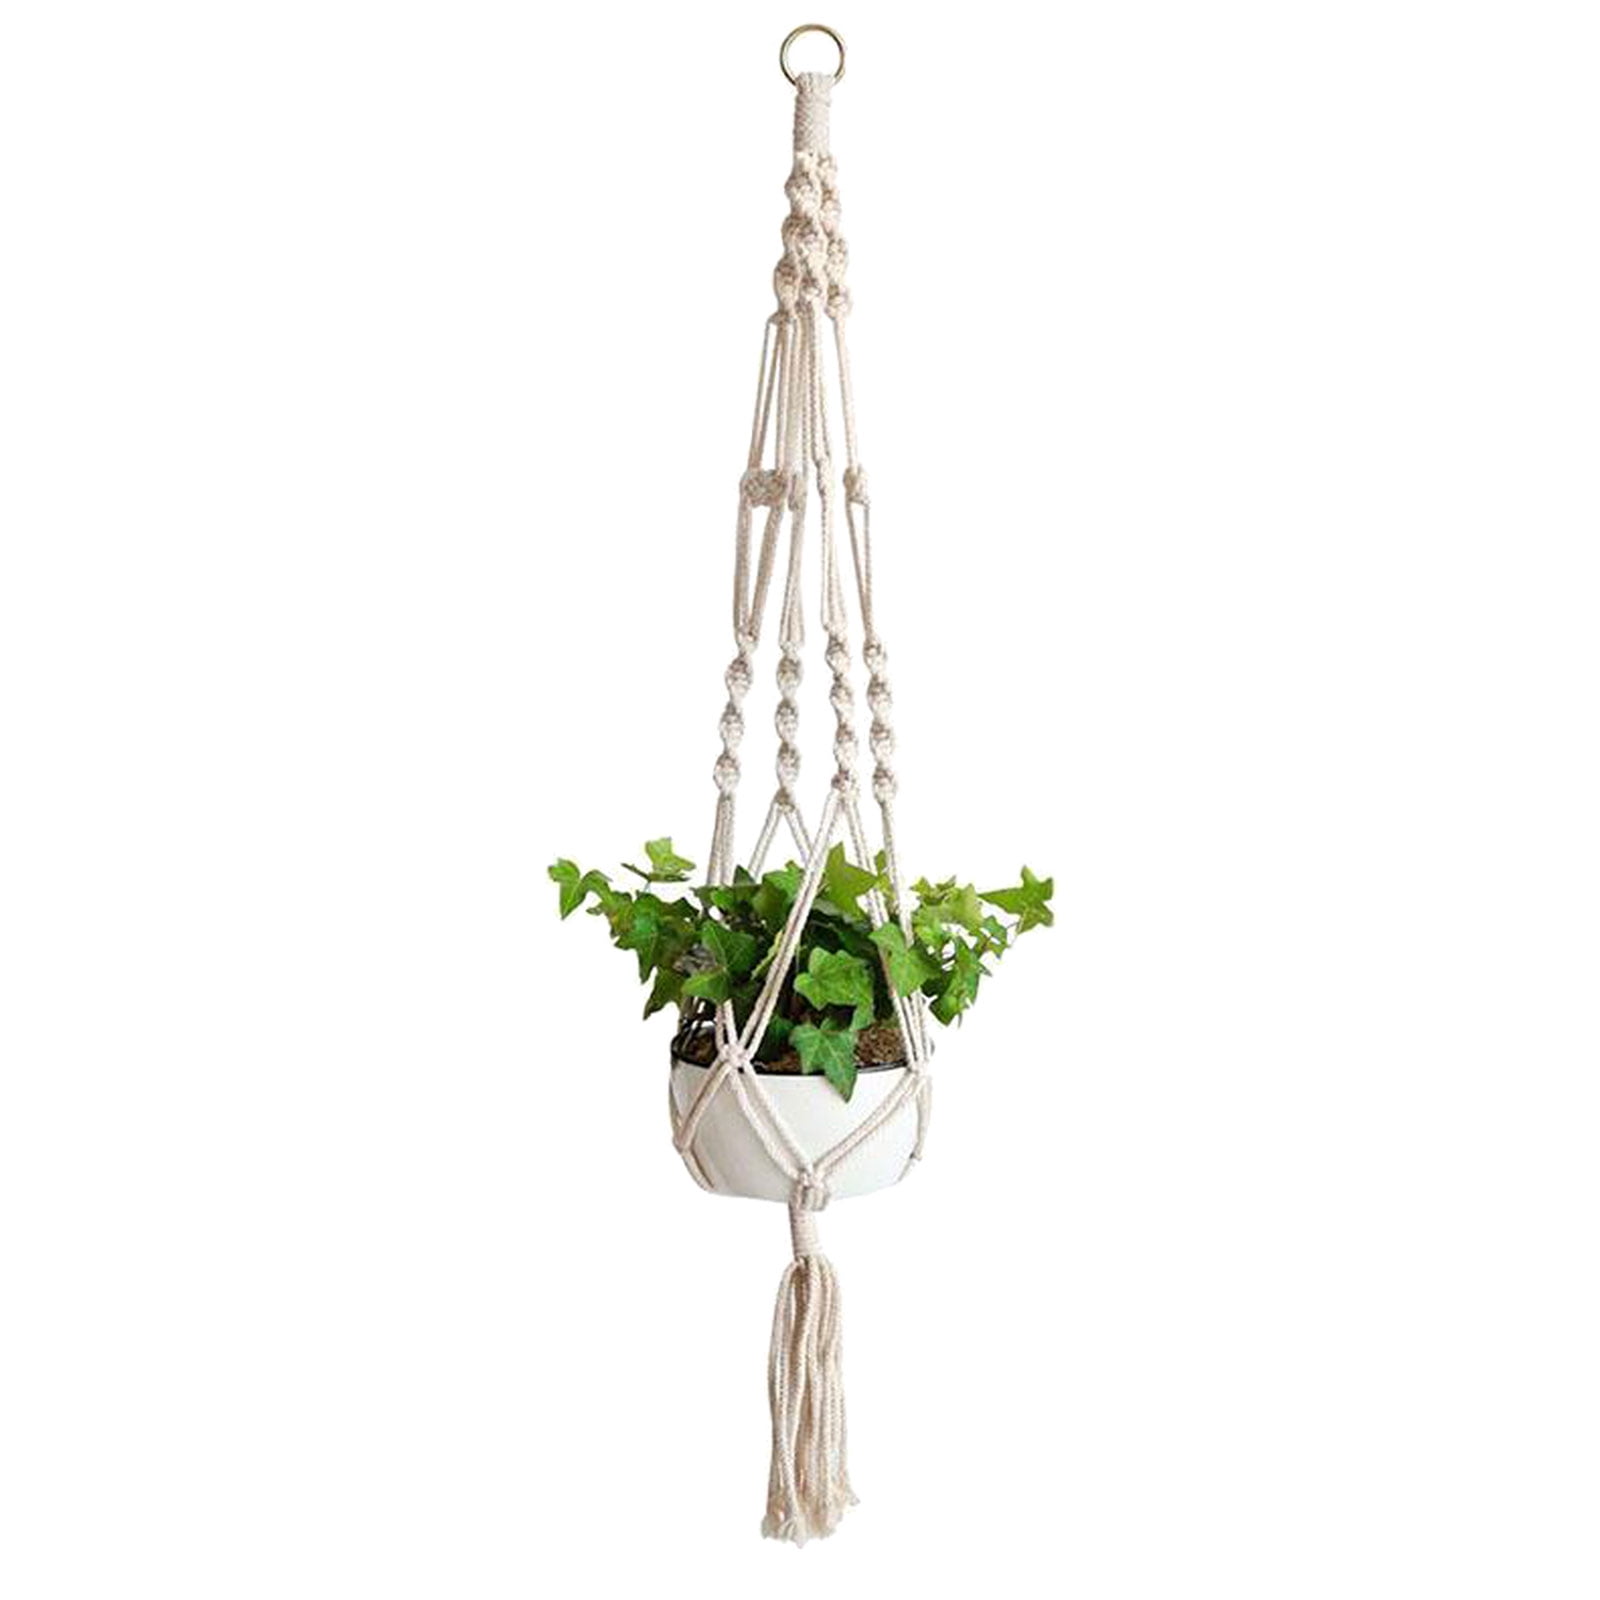 Vintage Macrame Plant Hanger Garden Flower Pot Holder Hanging Rope Baskets Decor